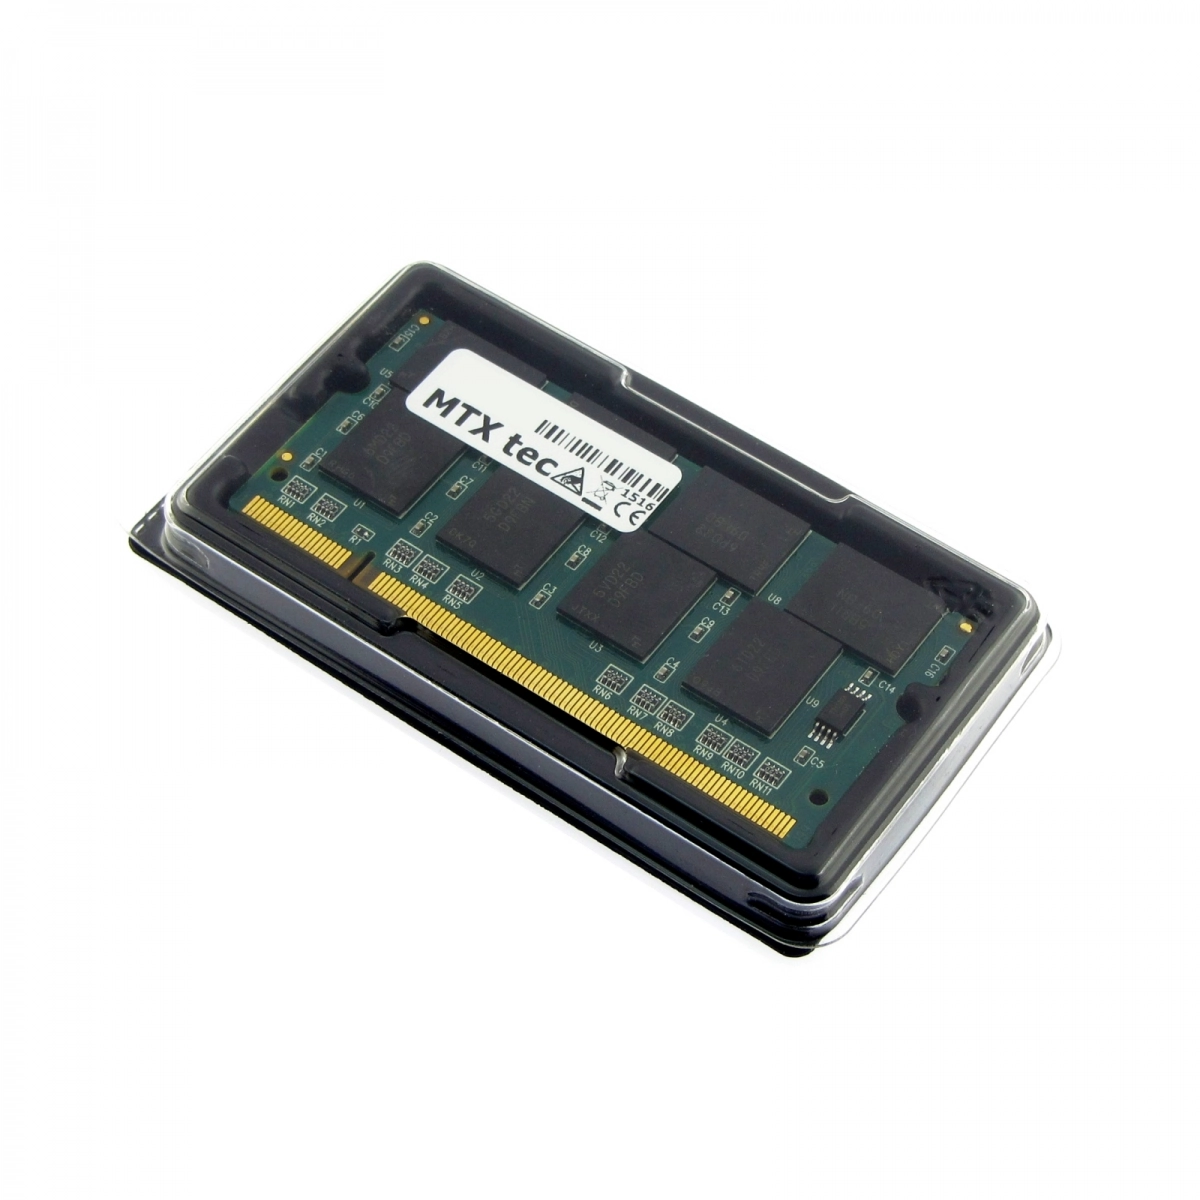 MTXtec Arbeitsspeicher 512 MB RAM für SONY Vaio PCG-9N1M